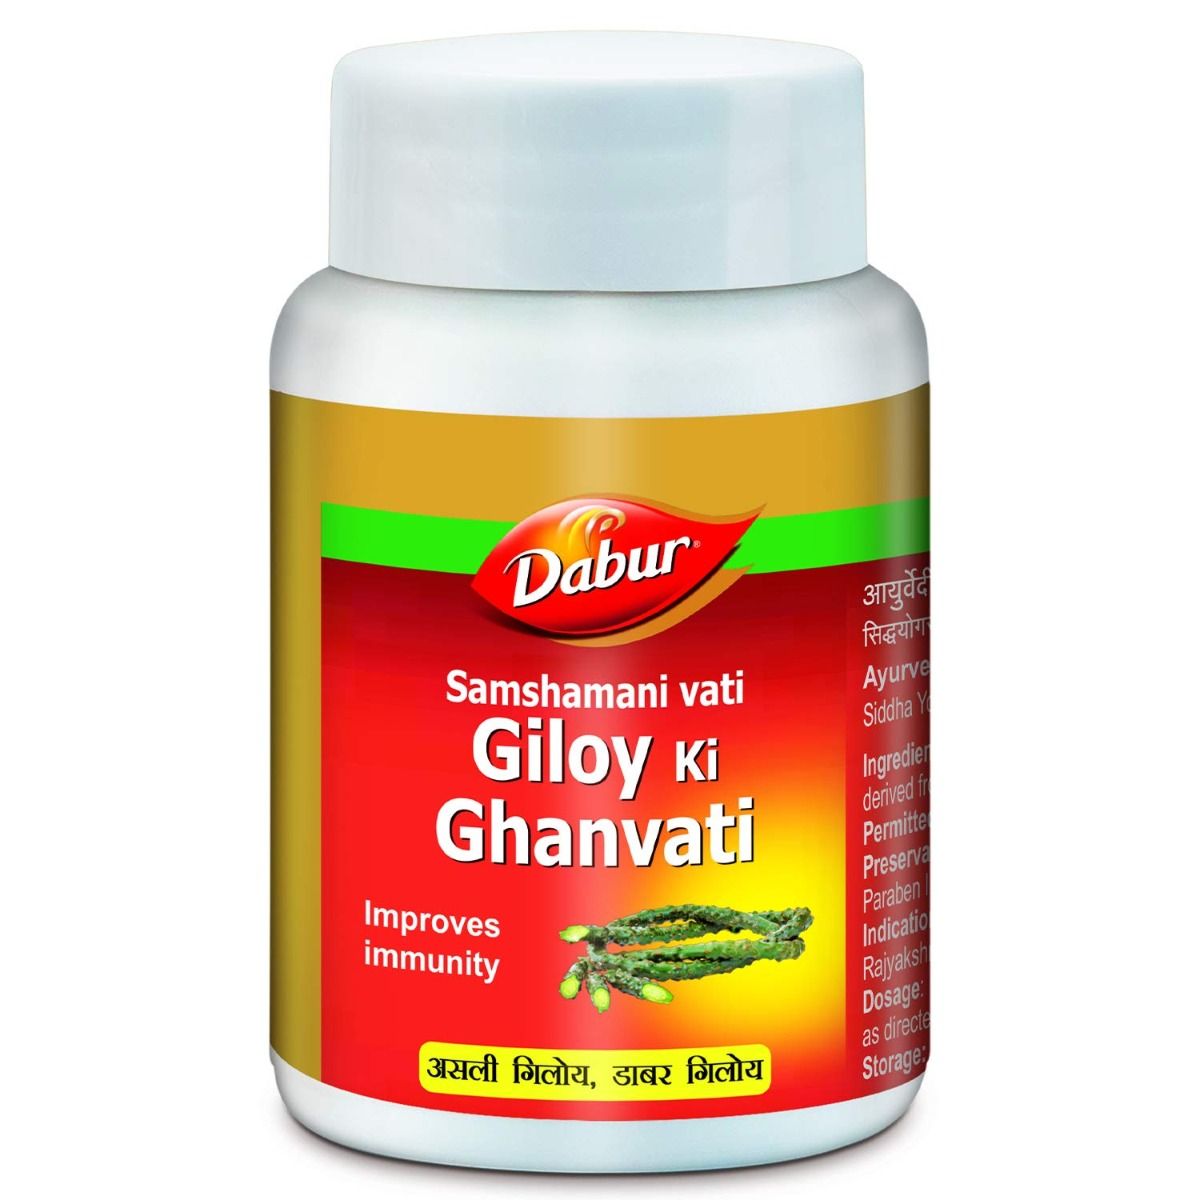 Dabur Samshamani Vati Giloy Ki Ghanvati Tablets, 100 Tablets, Pack of 1 